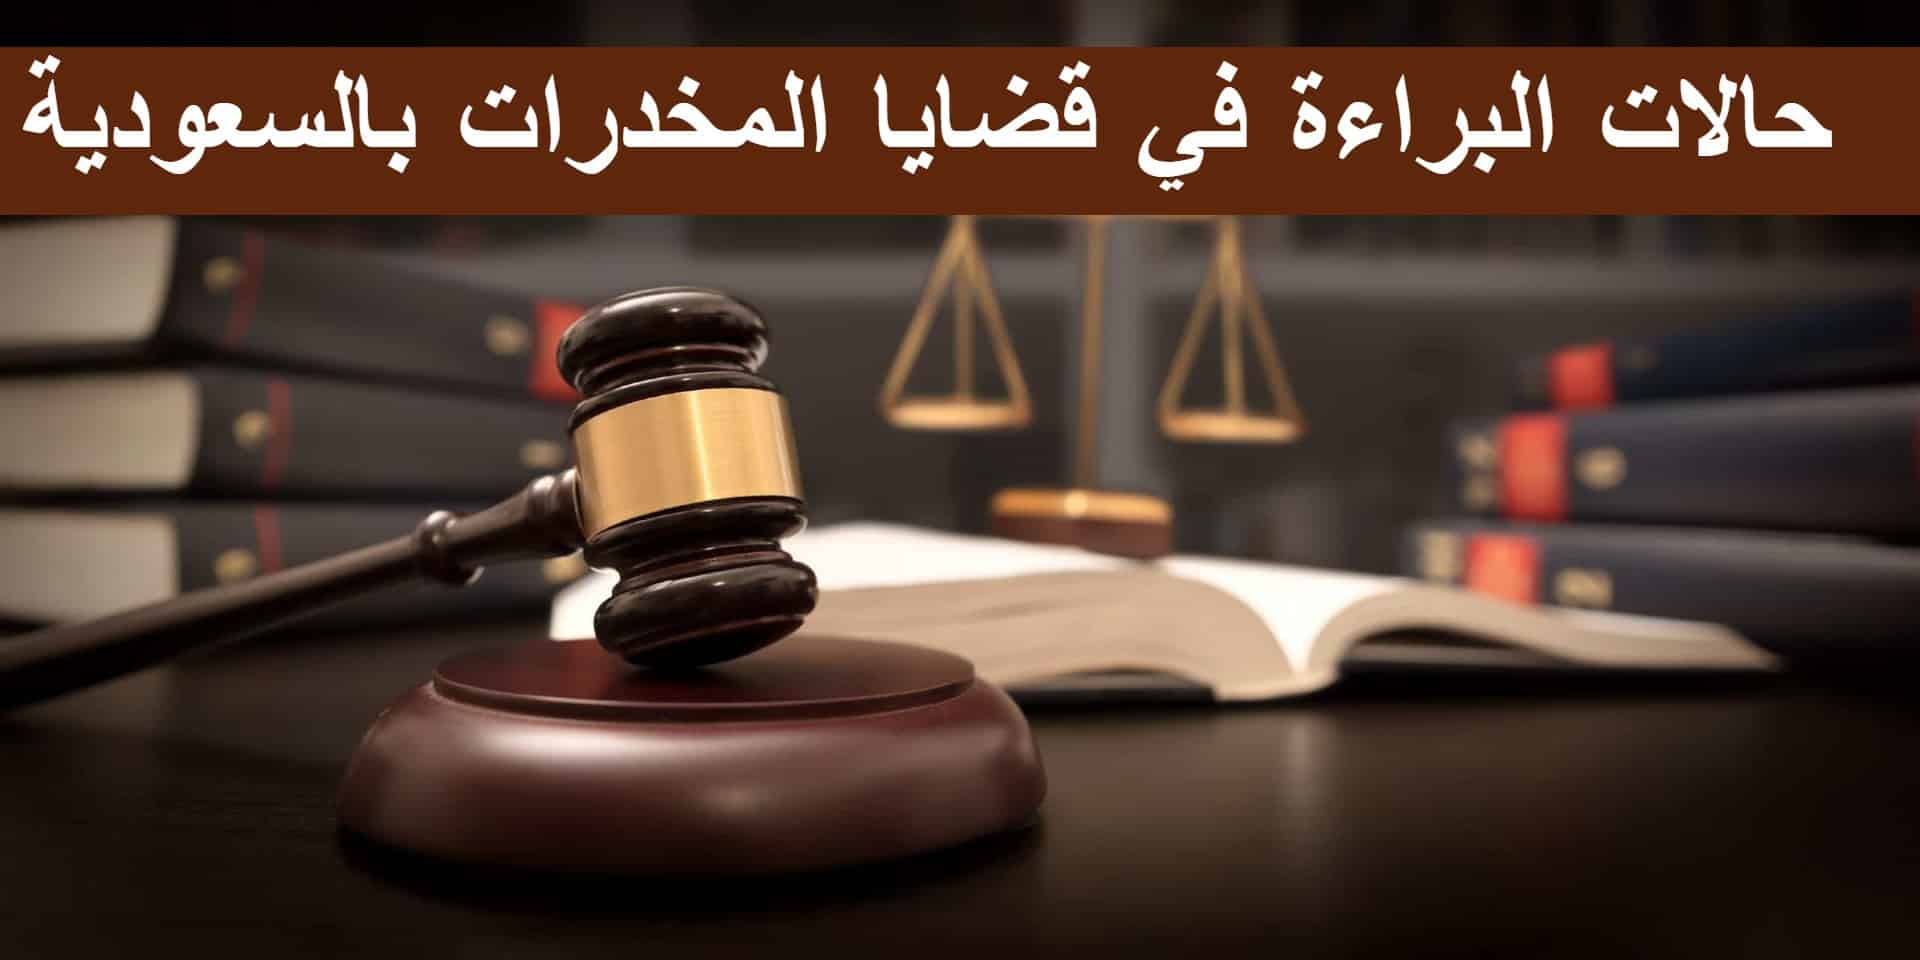 حالات البراءة في قضايا المخدرات بالسعودية وعقوبة التهريب